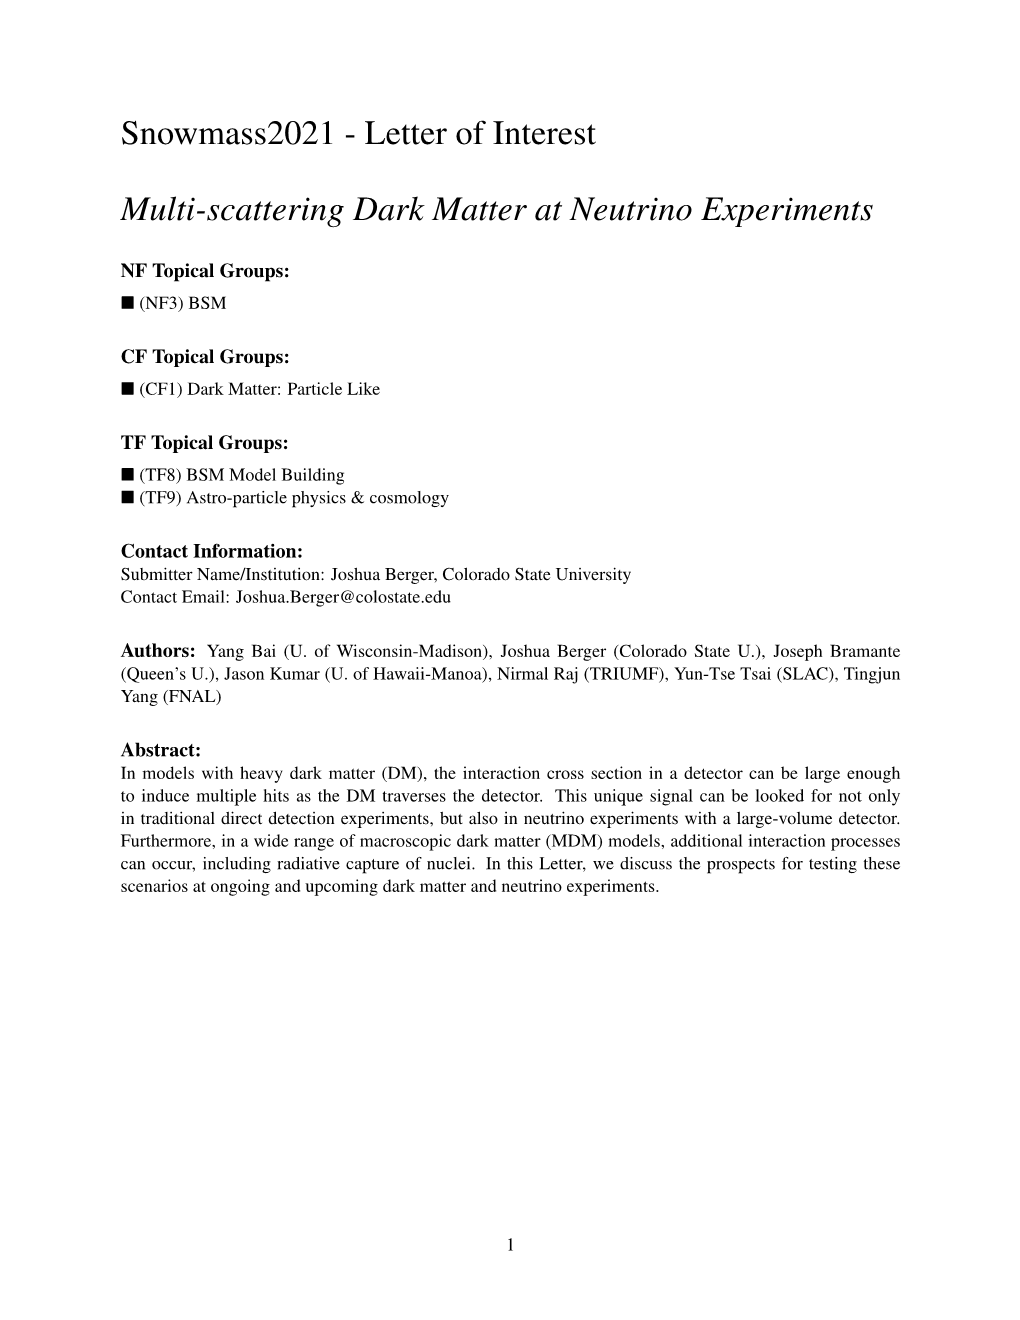 Letter of Interest Multi-Scattering Dark Matter at Neutrino Experiments